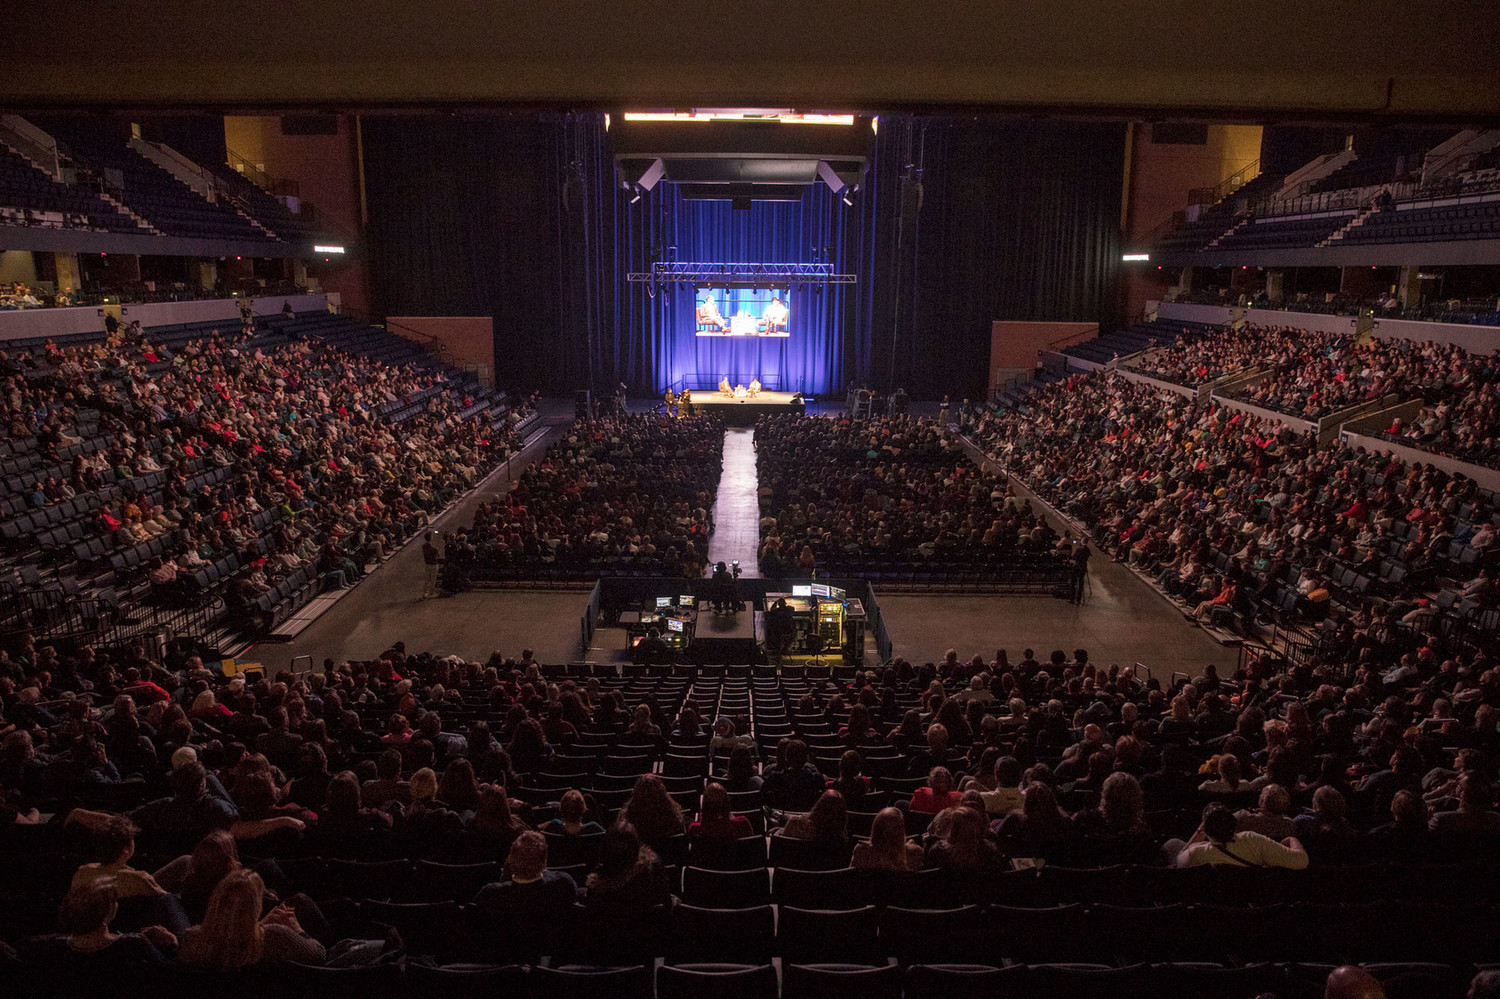 Over 2,700 students, faculty, sta³ and community members fill John Paul Jones Arena. IMAGE CREDIT: Dan Addison